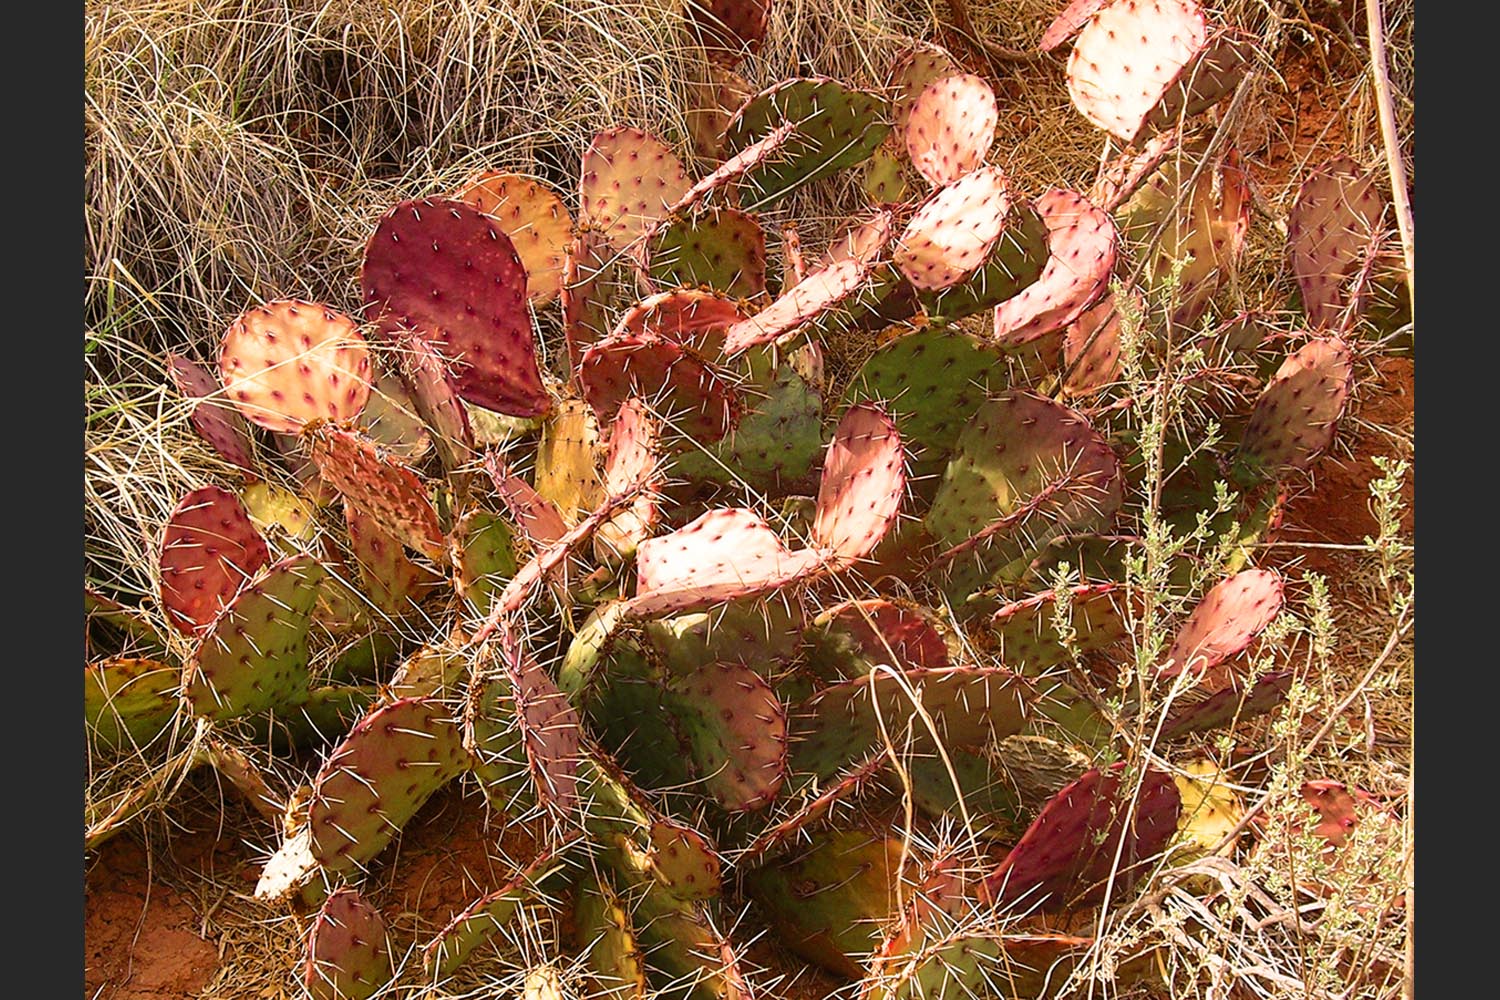 Robin Clark: Palo Duro Cactus - Palo Duro Canyon, Texas